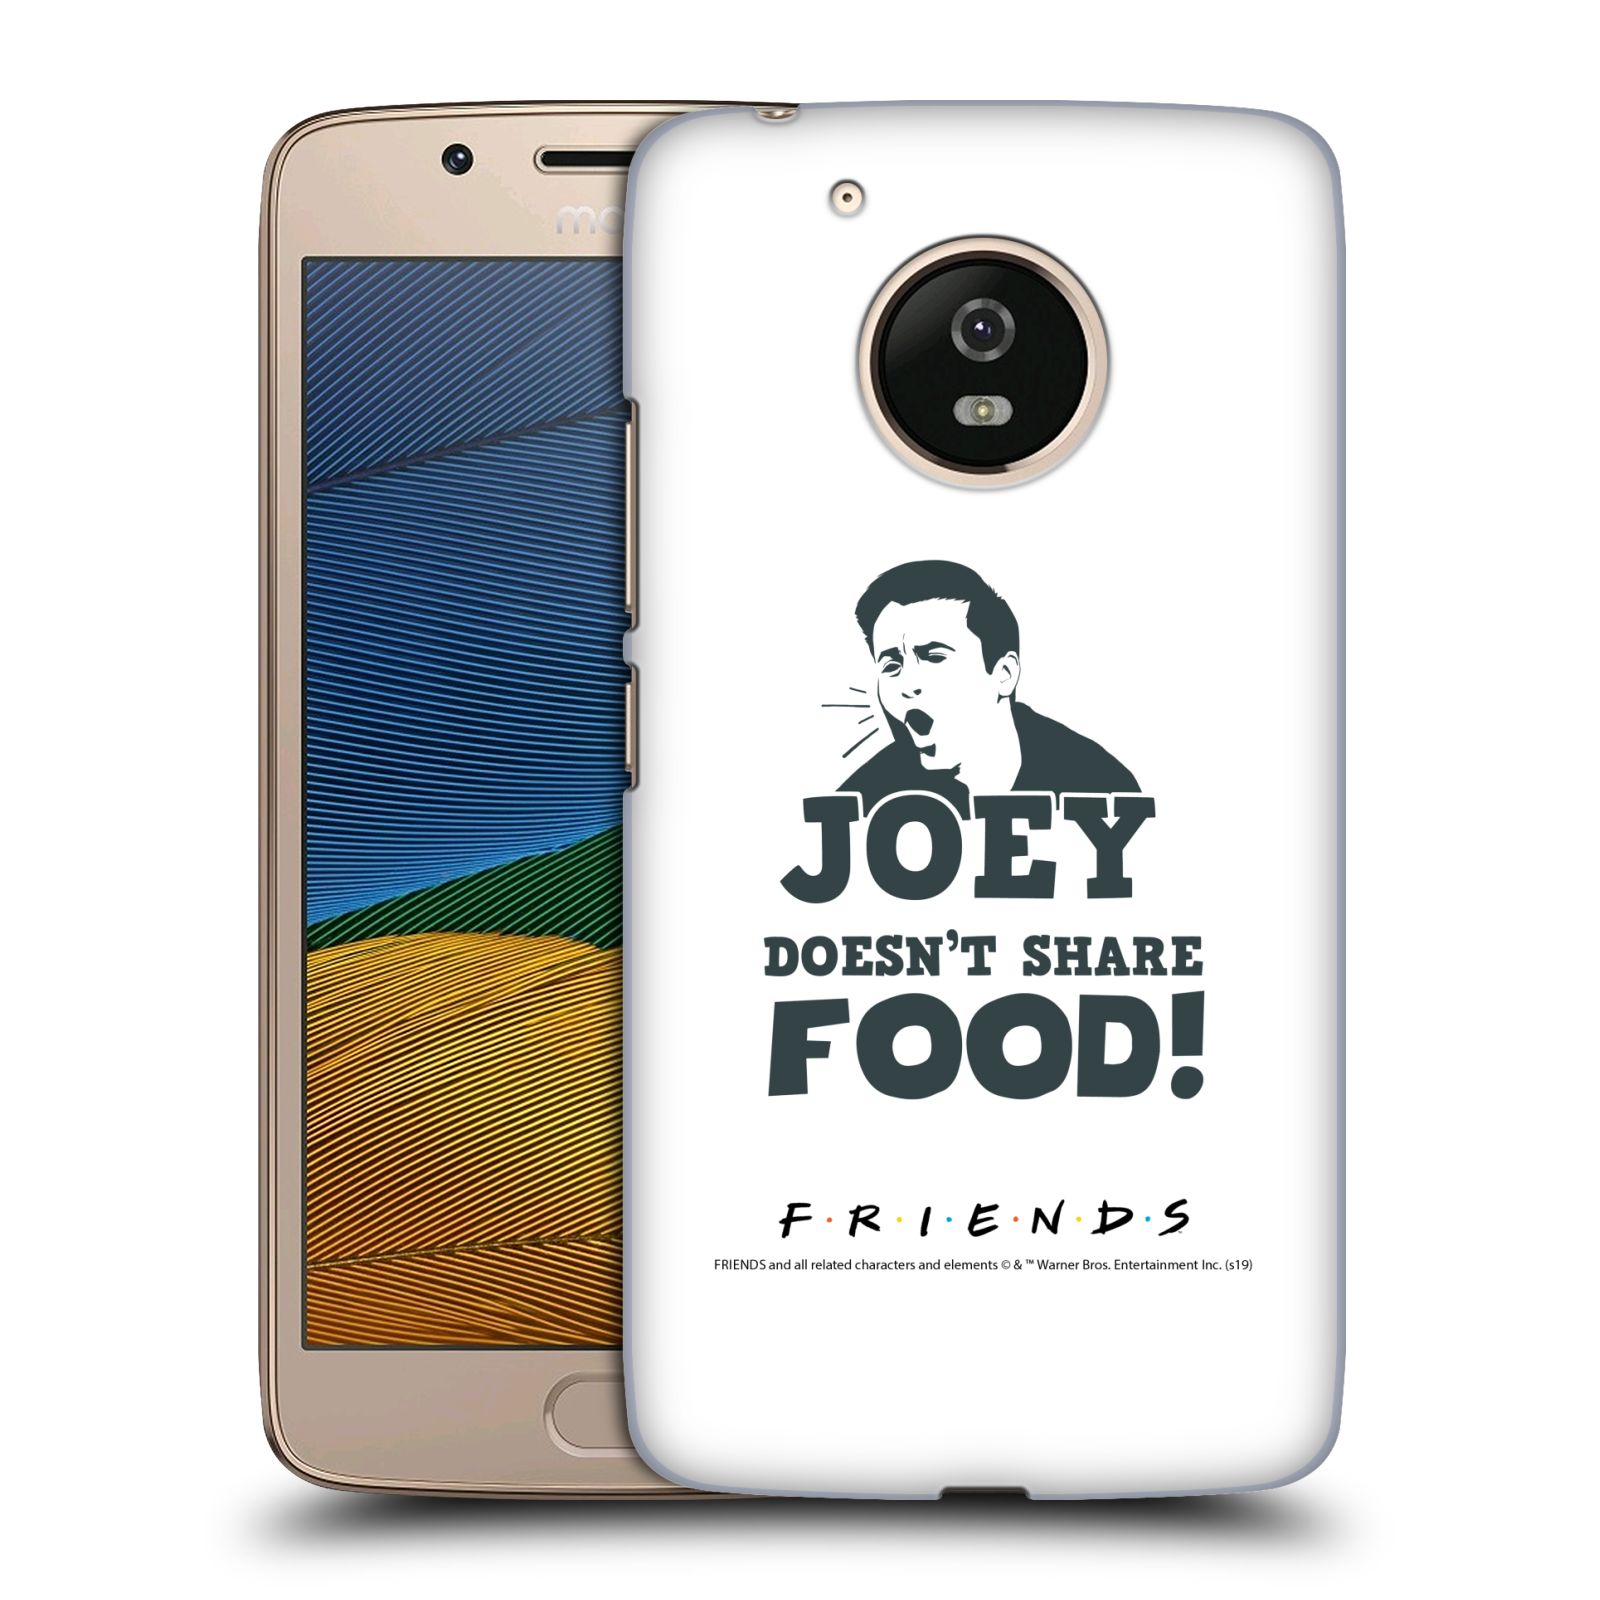 Pouzdro na mobil Lenovo Moto G5 - HEAD CASE - Seriál Přátelé - Joey se o jídlo nedělí